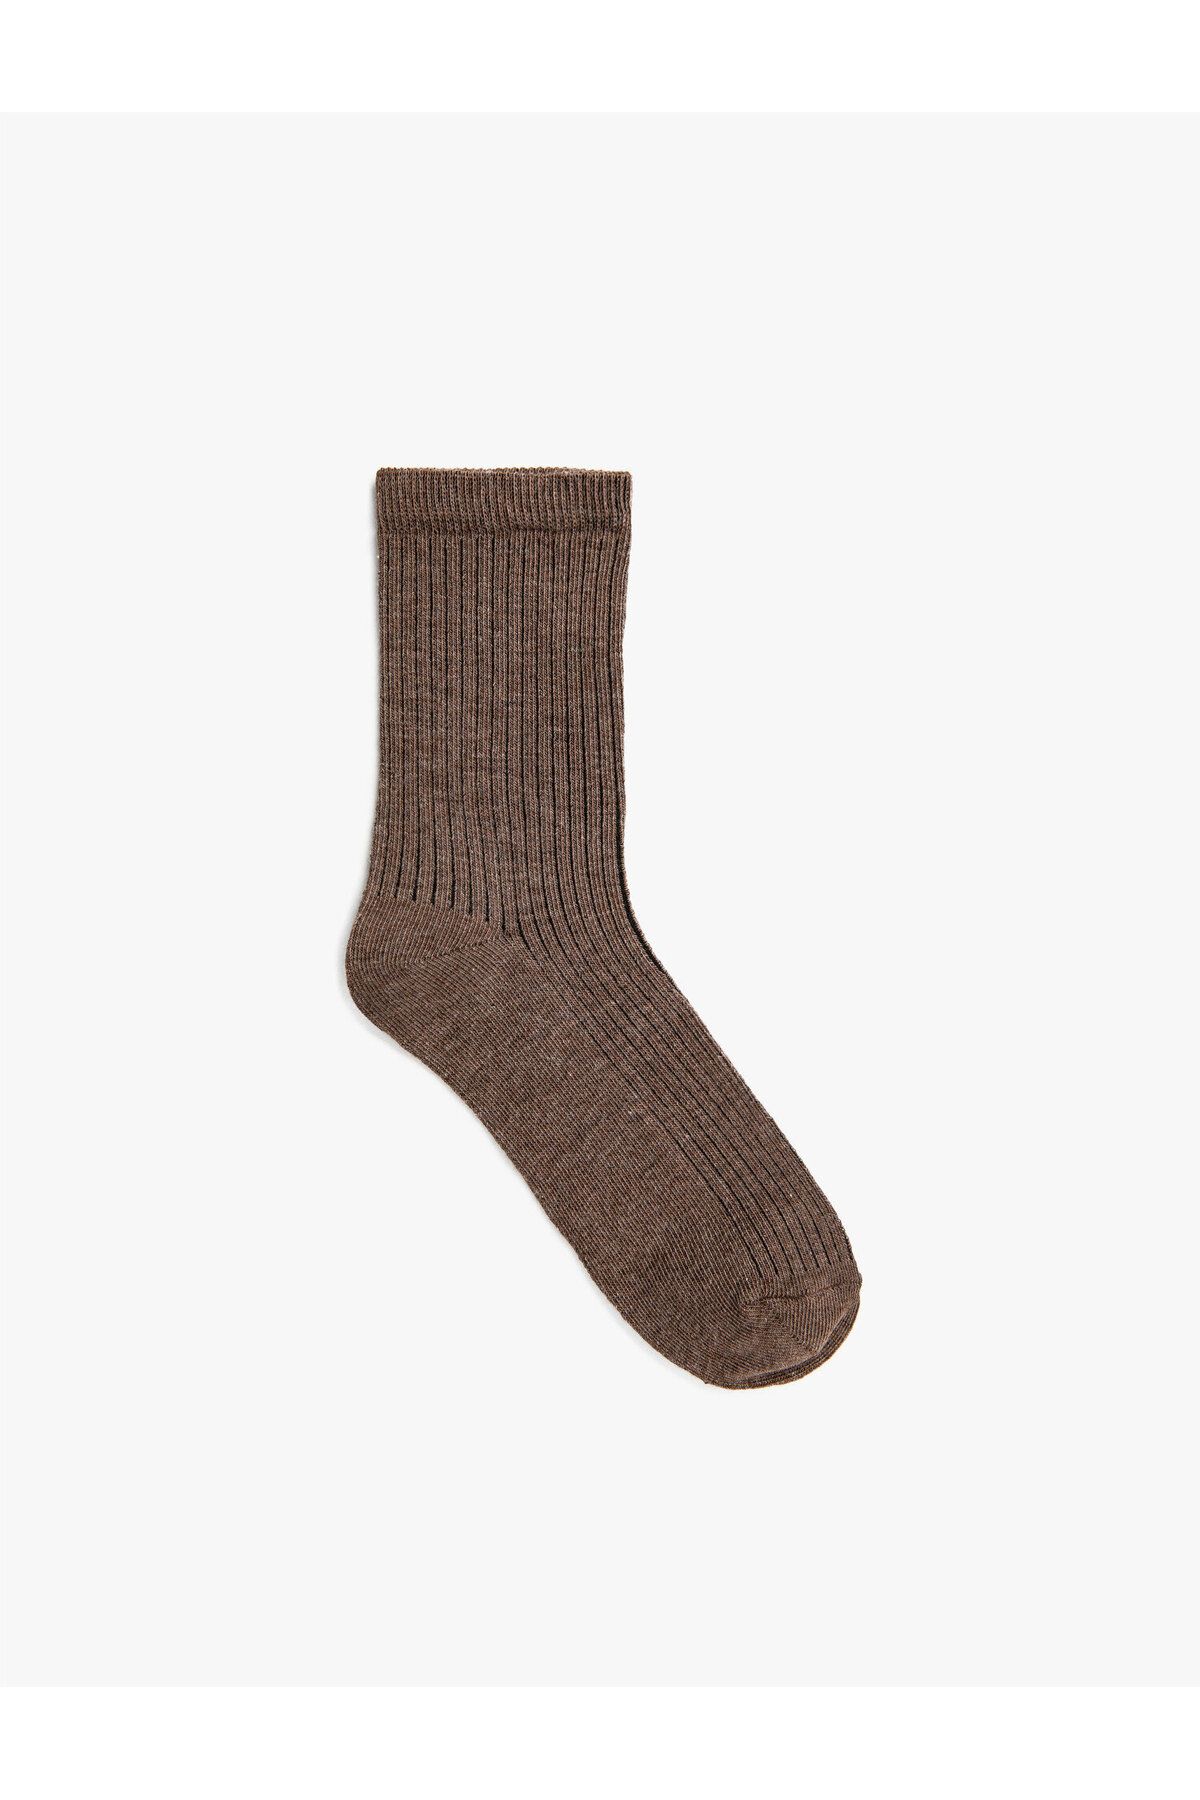 Koton Ribanalı Soket Çorap